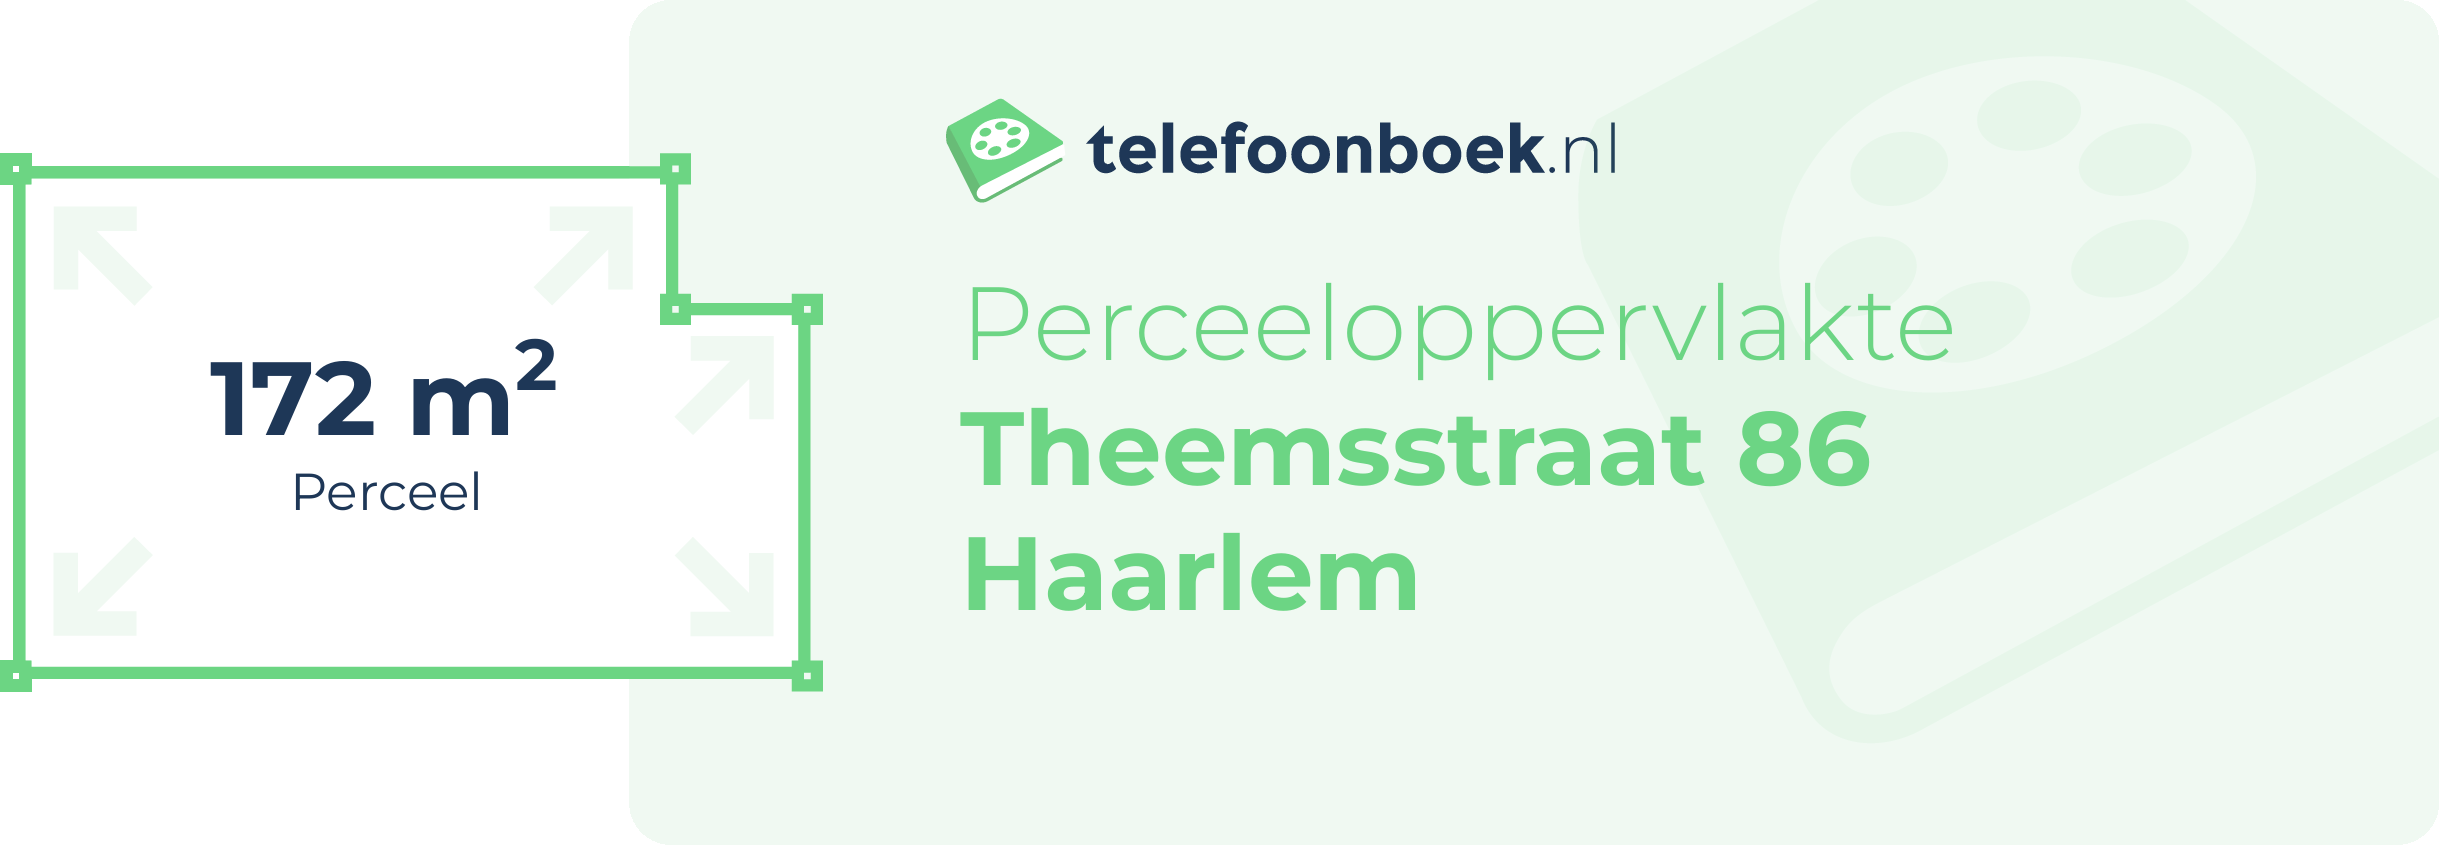 Perceeloppervlakte Theemsstraat 86 Haarlem